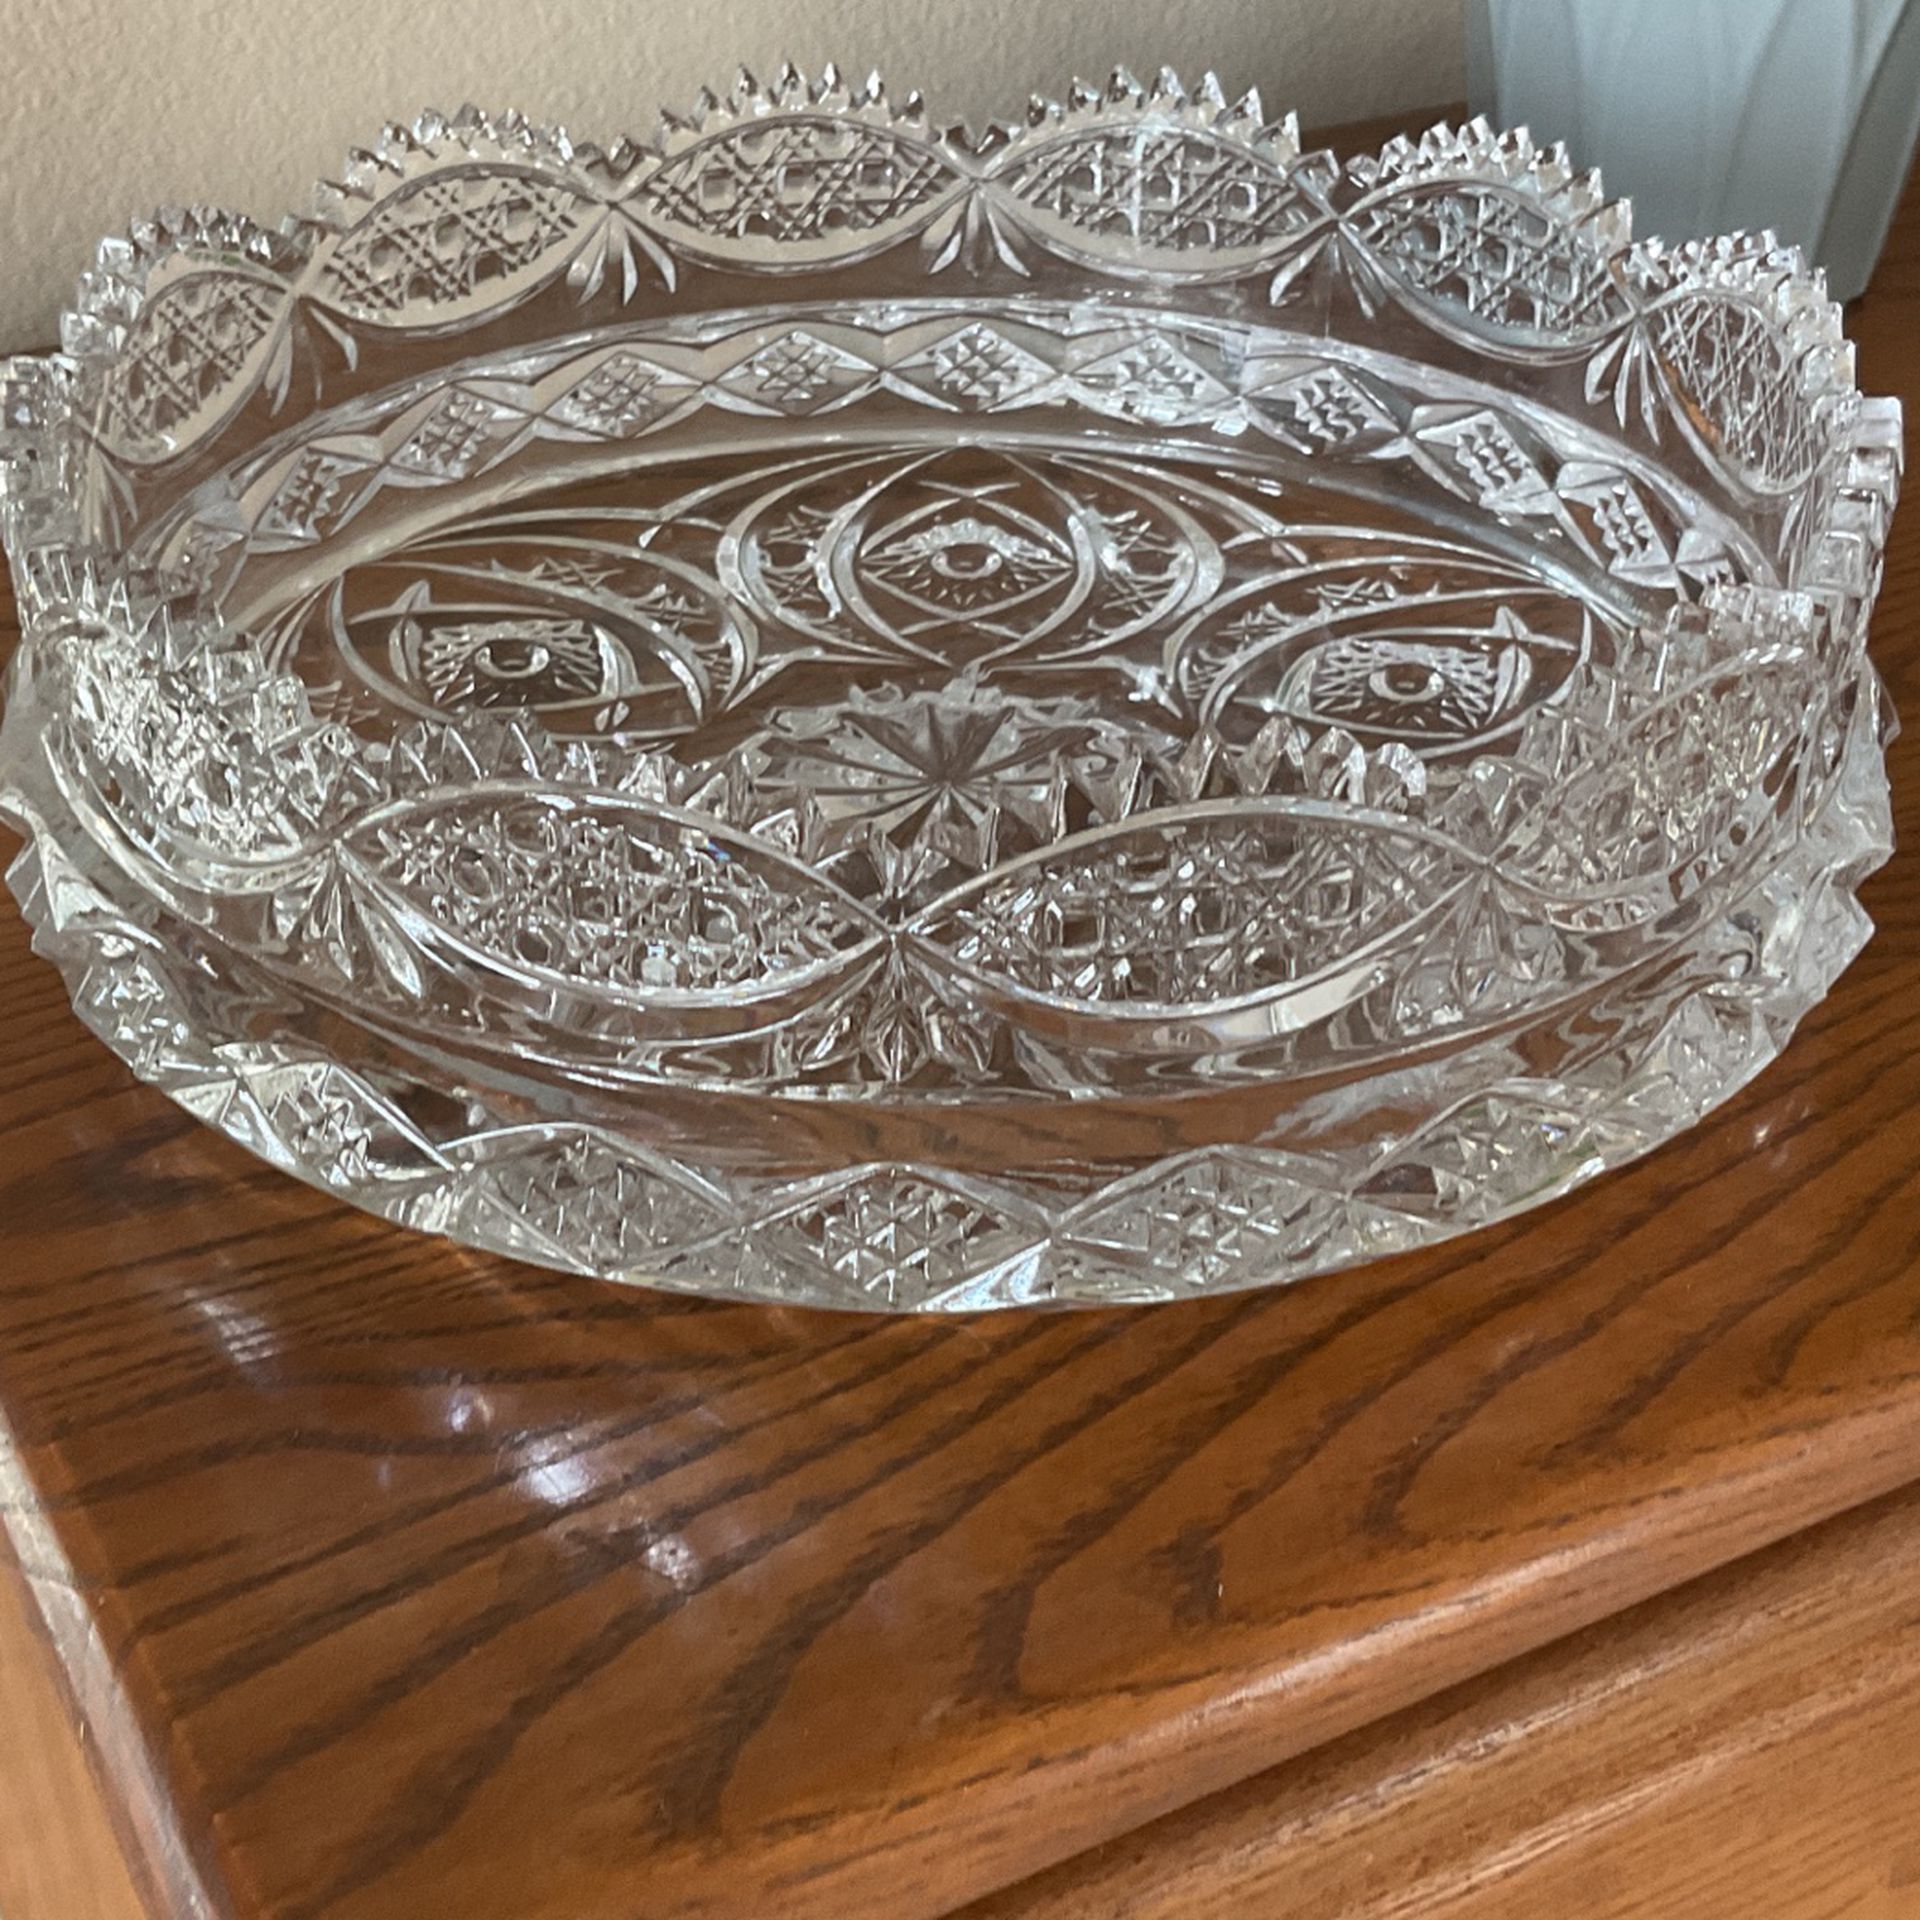 Glass Crystal Bowl